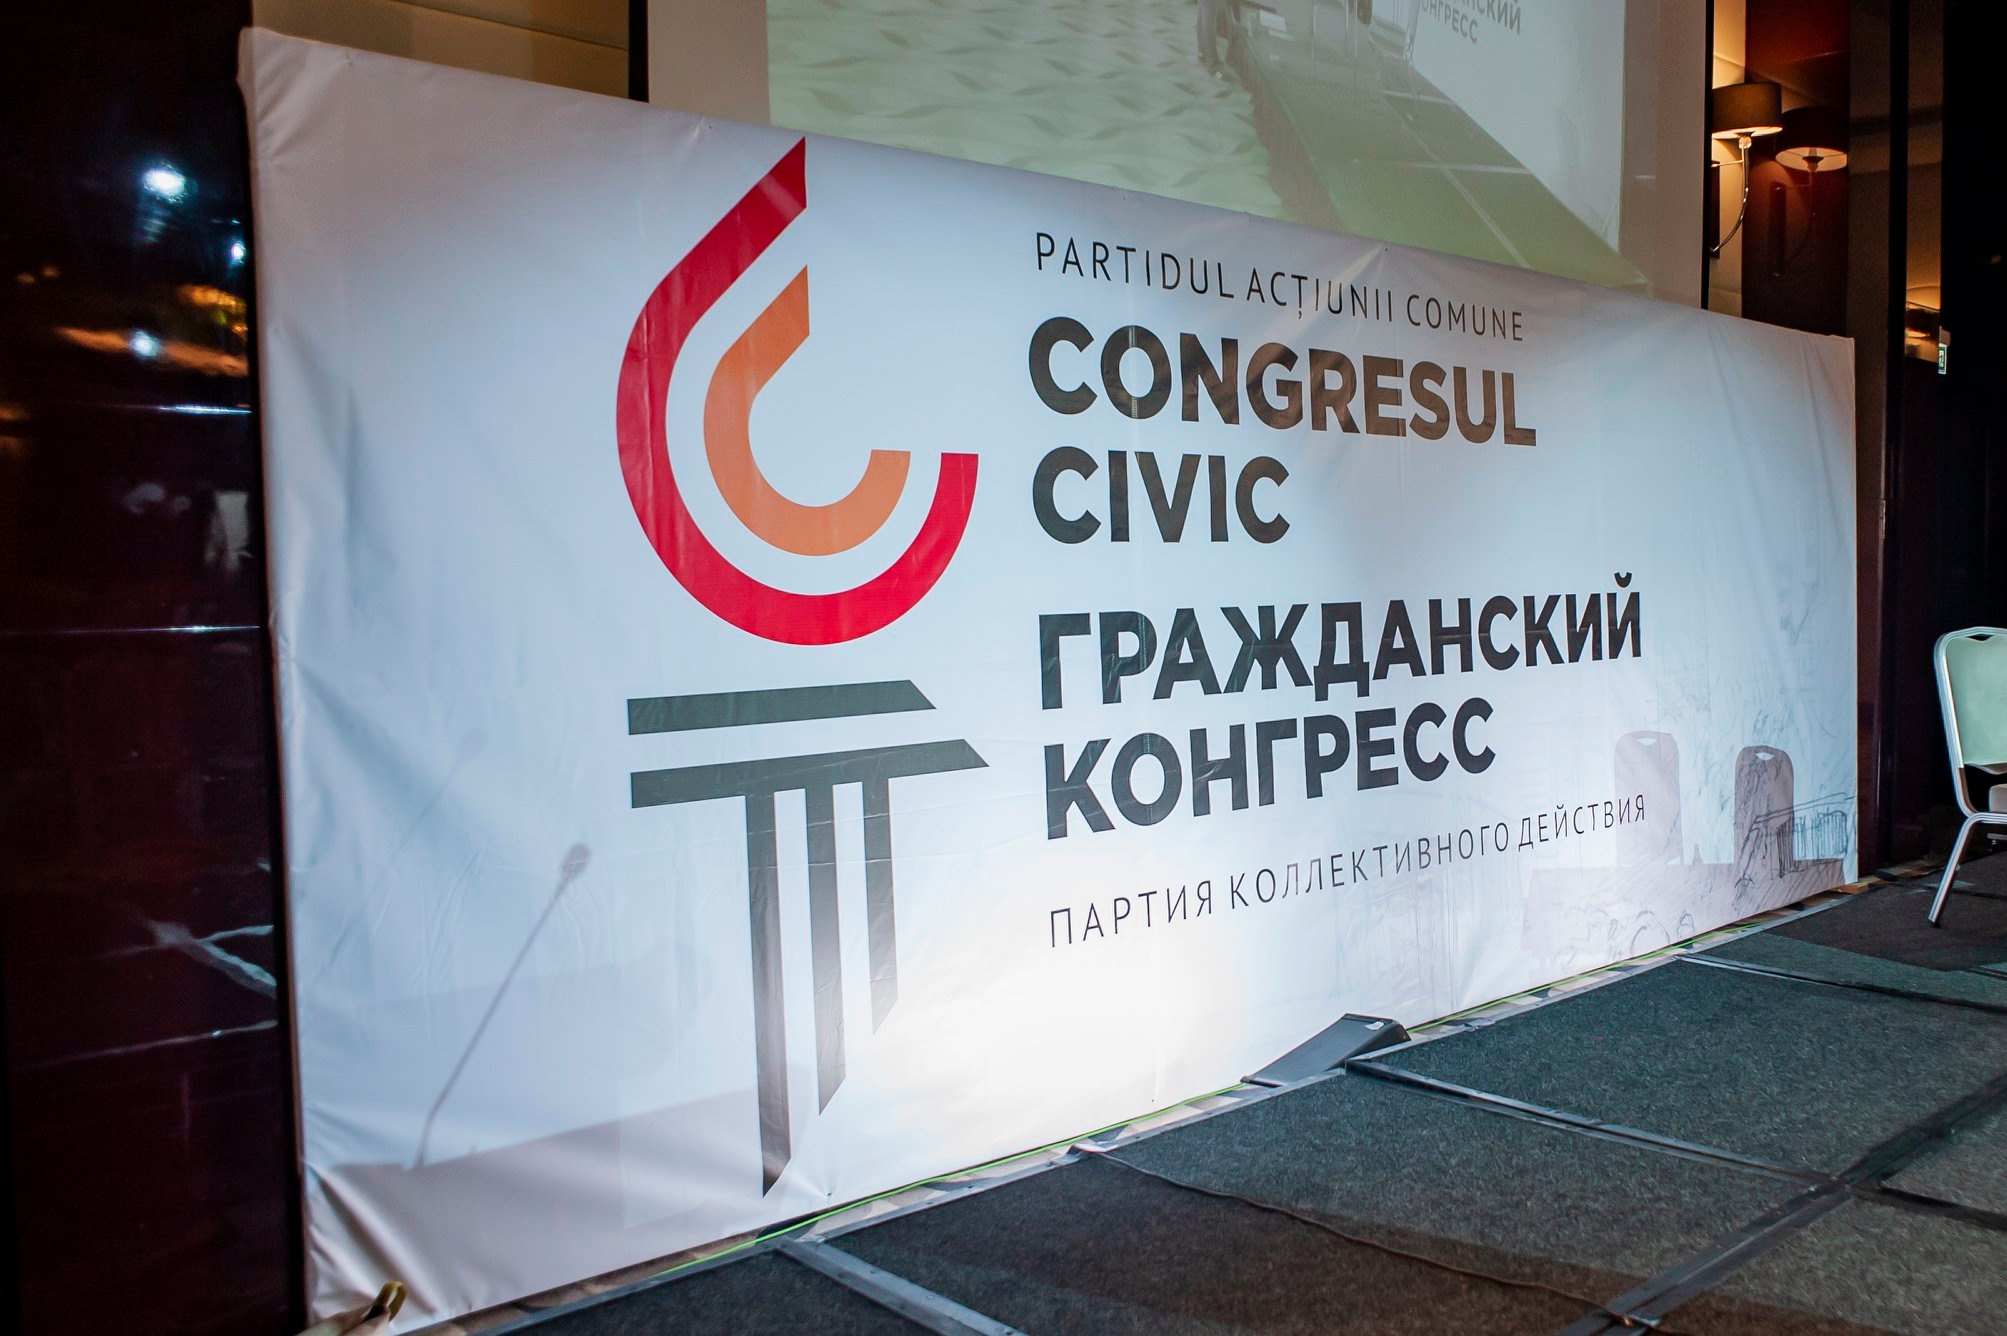 Гражданский конгресс Кишинёва: Произошёл рейдерский захват Совета по историческим памятникам-